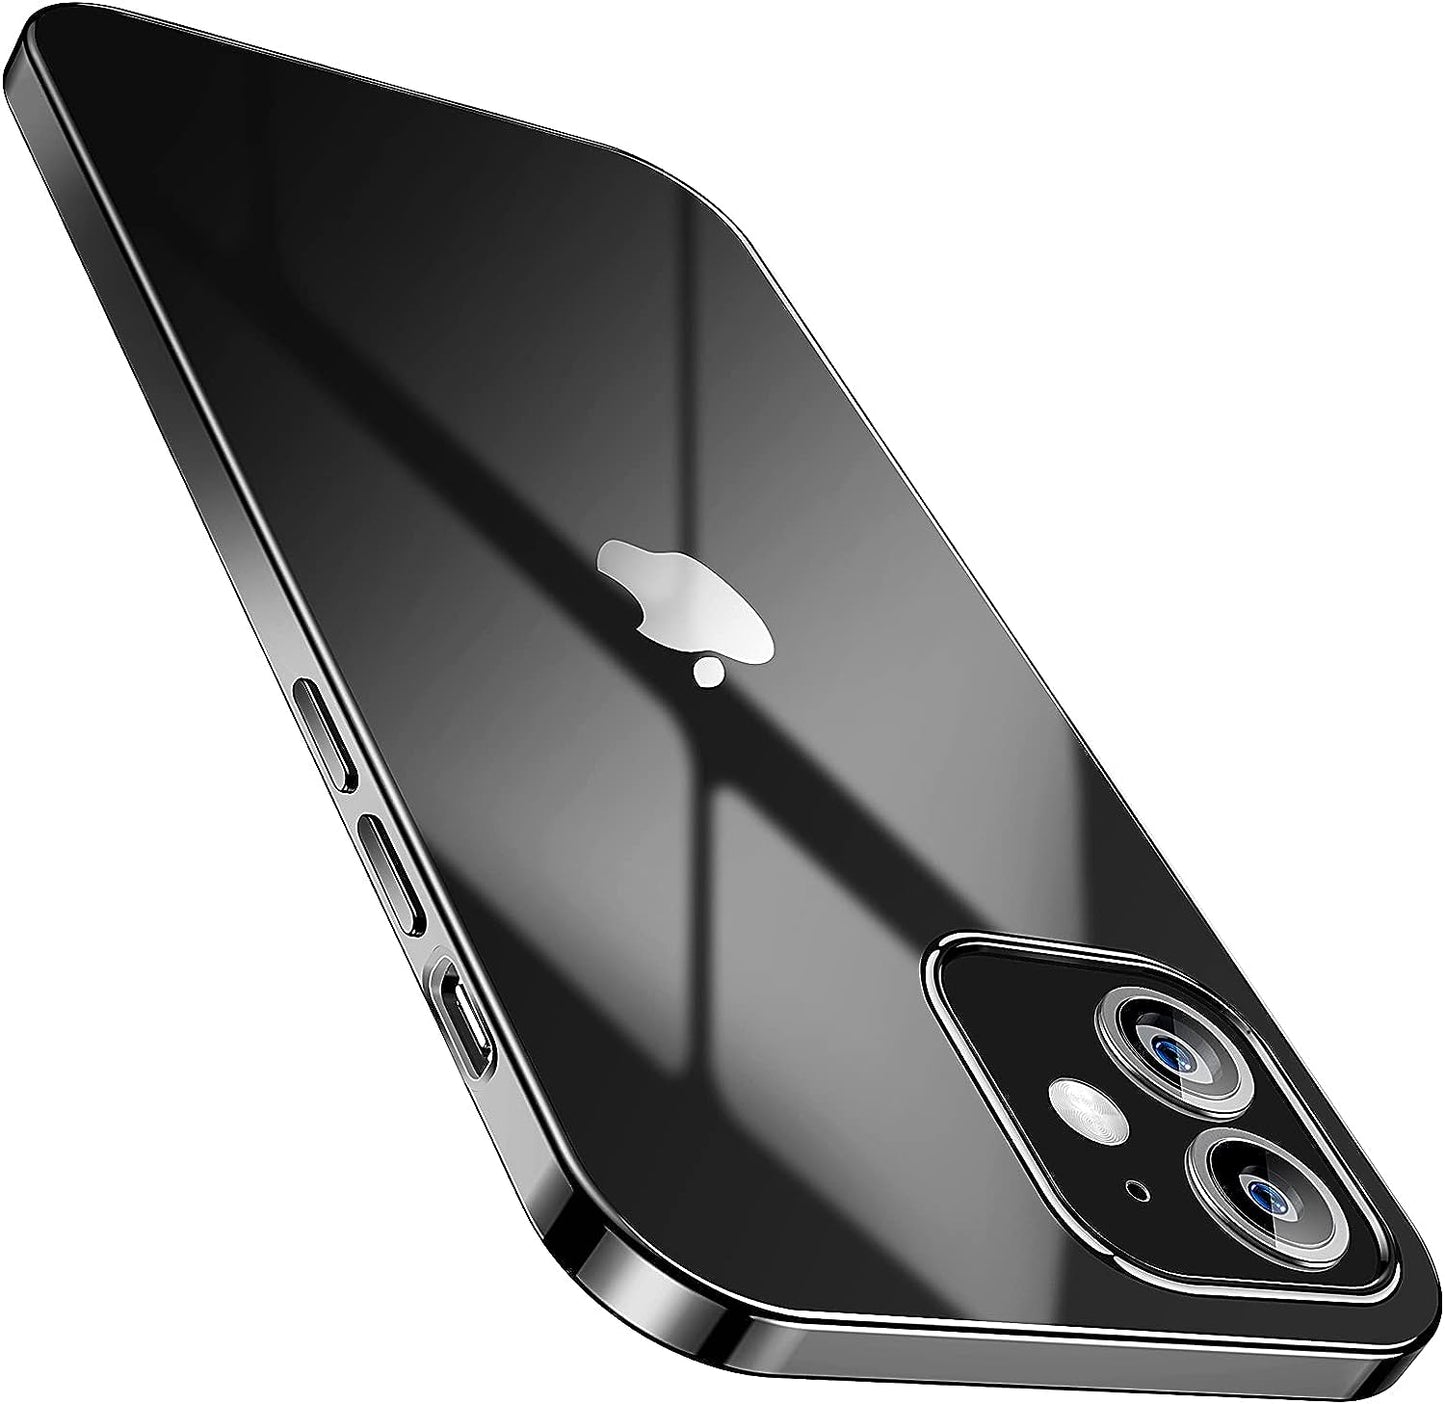 SMARTDEVIL Coque iPhone 12 Mini, Coque iPhone 12 Mini Transparente, AIR Cushion, Bumper Renforcé en TPU, Dos en PC, Protection Coin, Compatible con iPhone 12 Mini-Argent